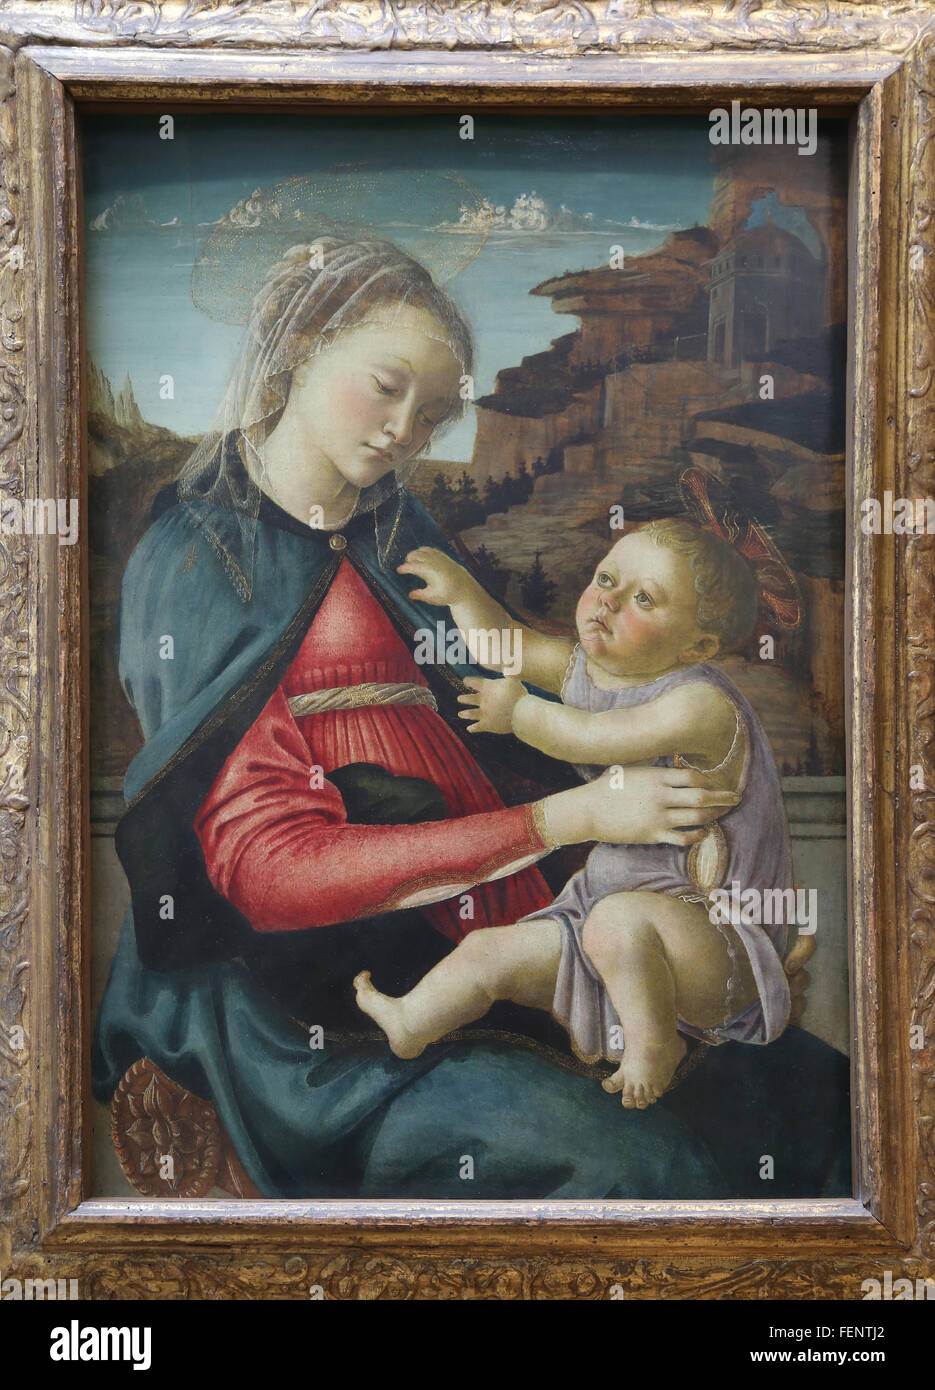 Madonna mit Kind, 1465-1470. Tempera auf Verkleidung. Von Sandro Botticelli (1445-1510). Italienischer Maler. Renaissance. Louvre-Museum. Stockfoto